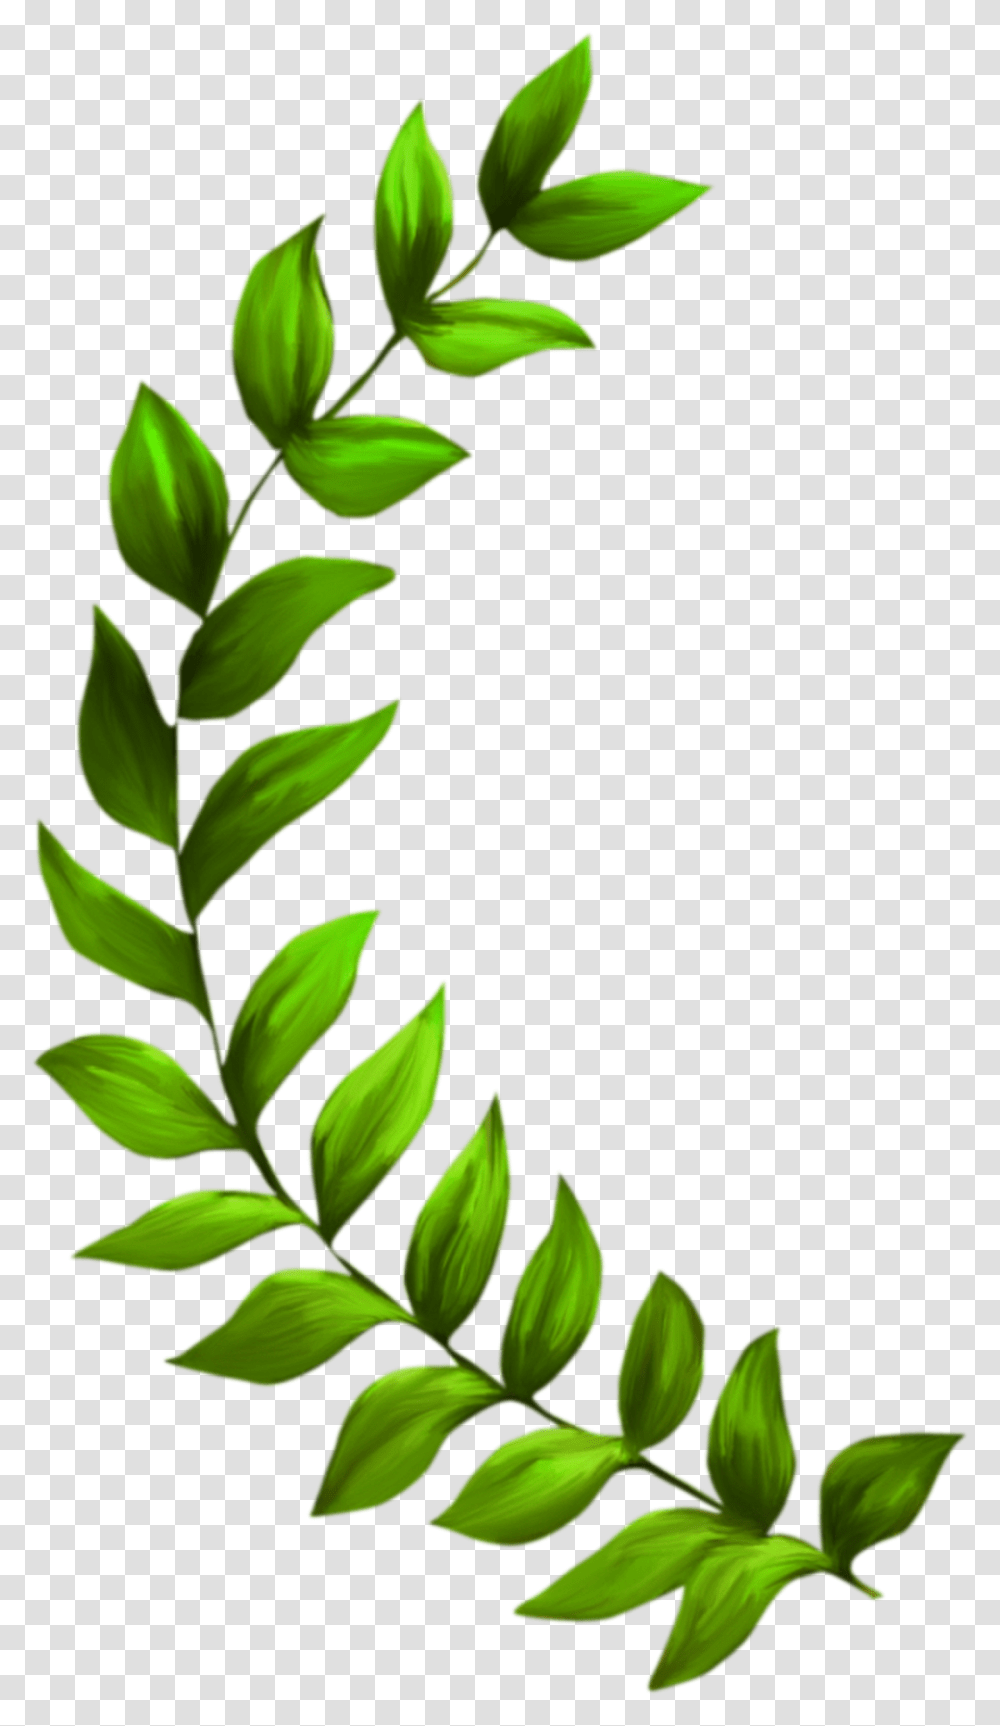 Seagrass Plant Seaweed Clip Art, Green, Leaf, Vase, Jar Transparent Png